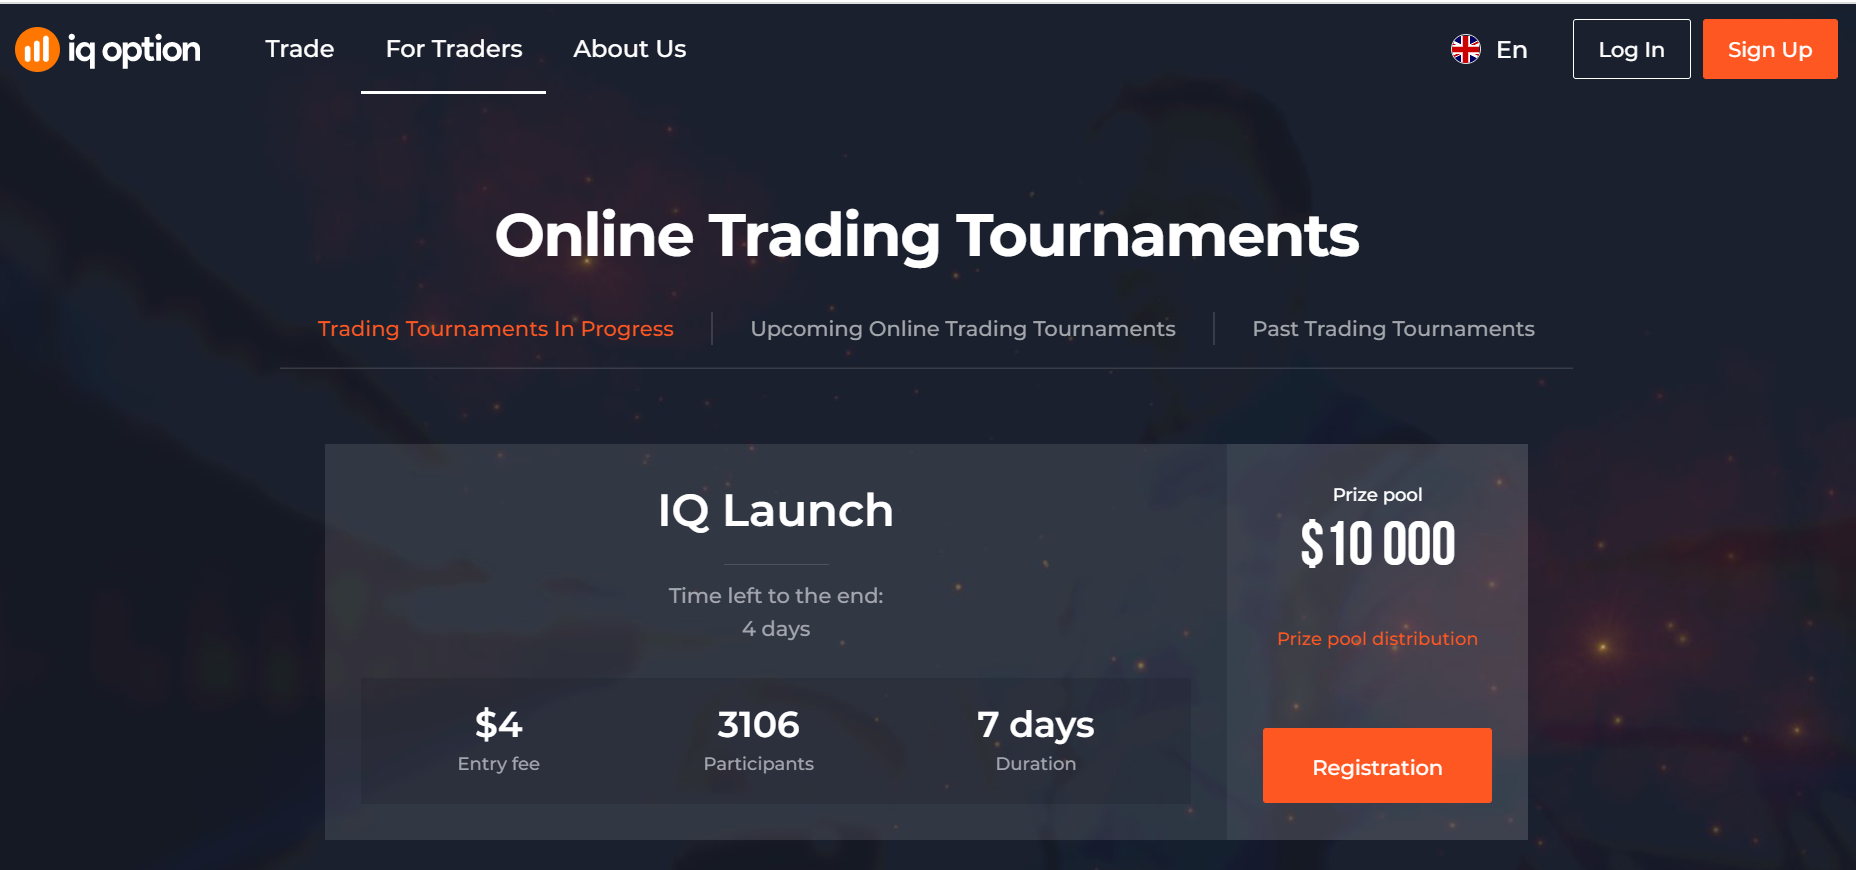 IQ Option trading tournaments